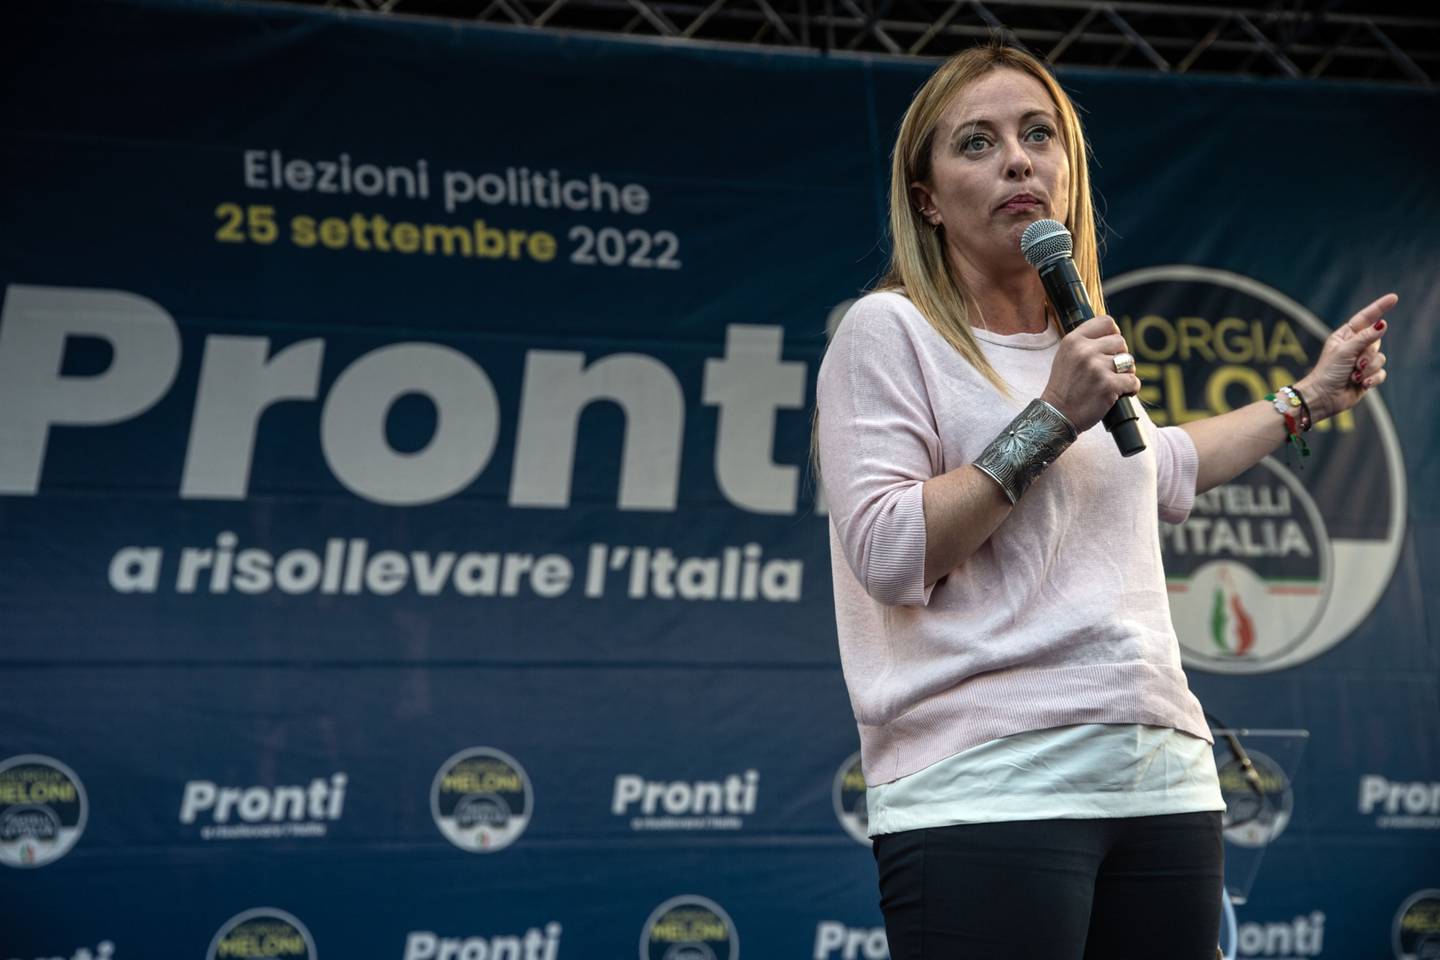 Giorgia Meloni líder del partido "Fratelli d'Italia" habla en un mitin político el 18 de septiembre de 2022 en Caserta, Italia.